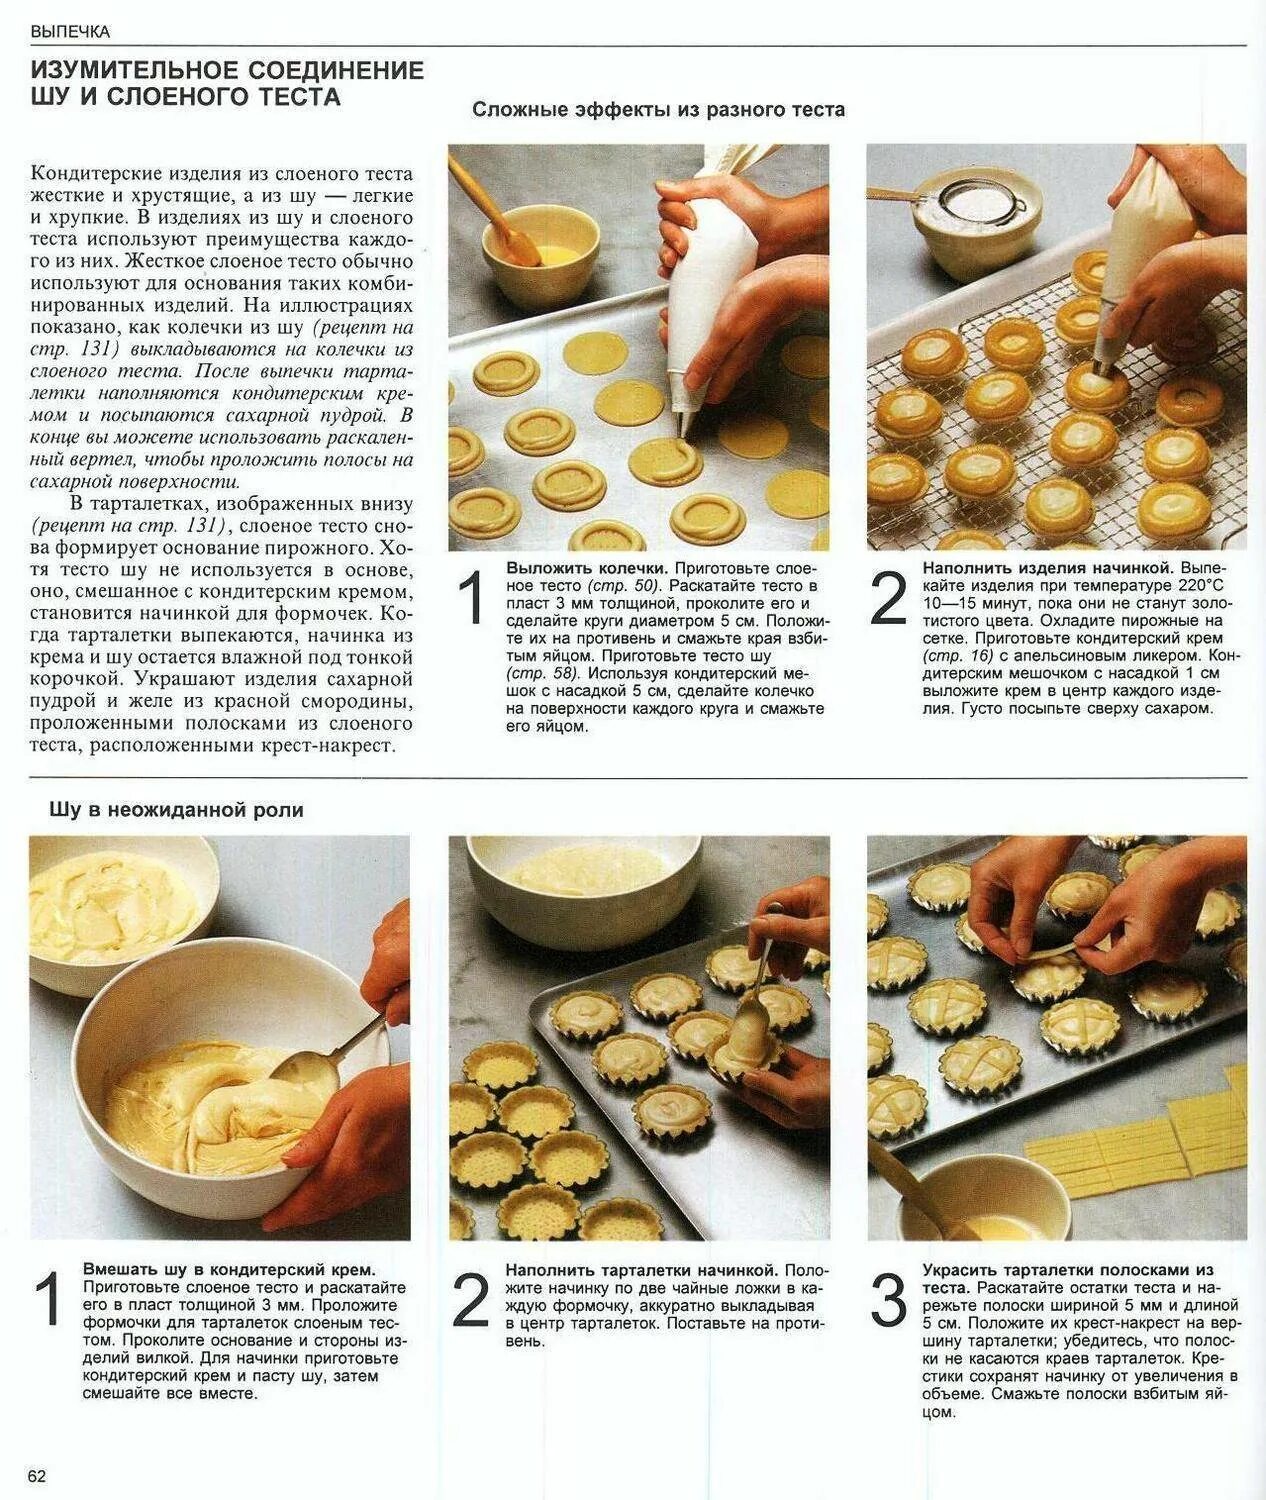 Рецепты выпечки. Легкий рецепт выпечки. Рецепты простой выпечки в картинках. Кулинарные рецепты с фотографиями пошагового приготовления.